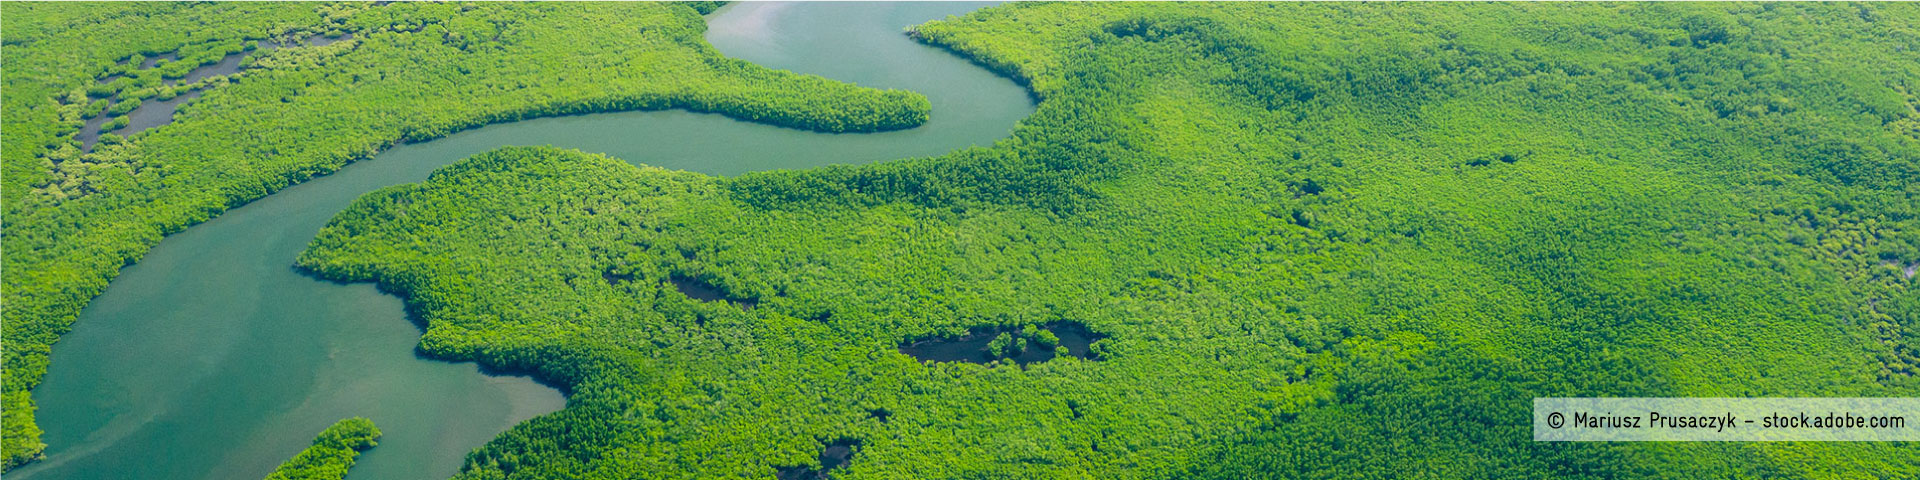 Um rio serpenteia uma paisagem verde. © Mariusz Prusaczyk – stock.adobe.com